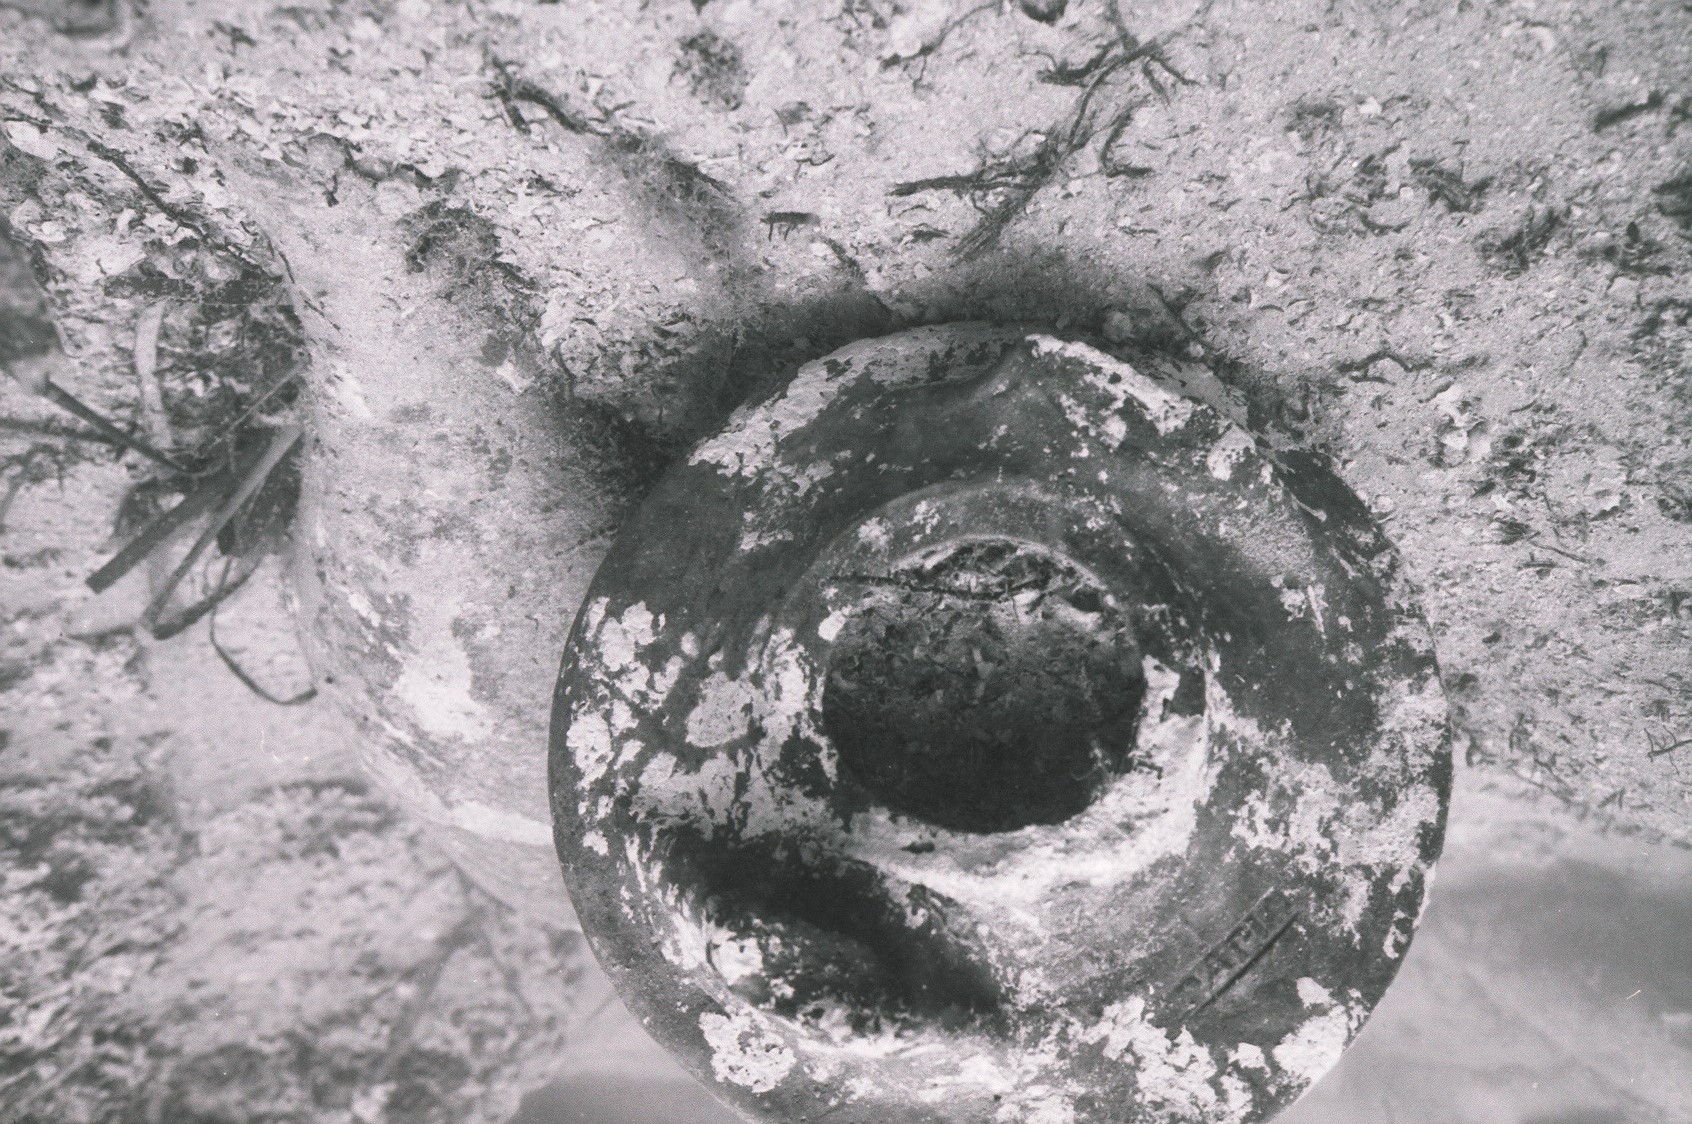 anfora, Dressel 1B, Papia - periodo romano (metà SECOLI/ I a.C)